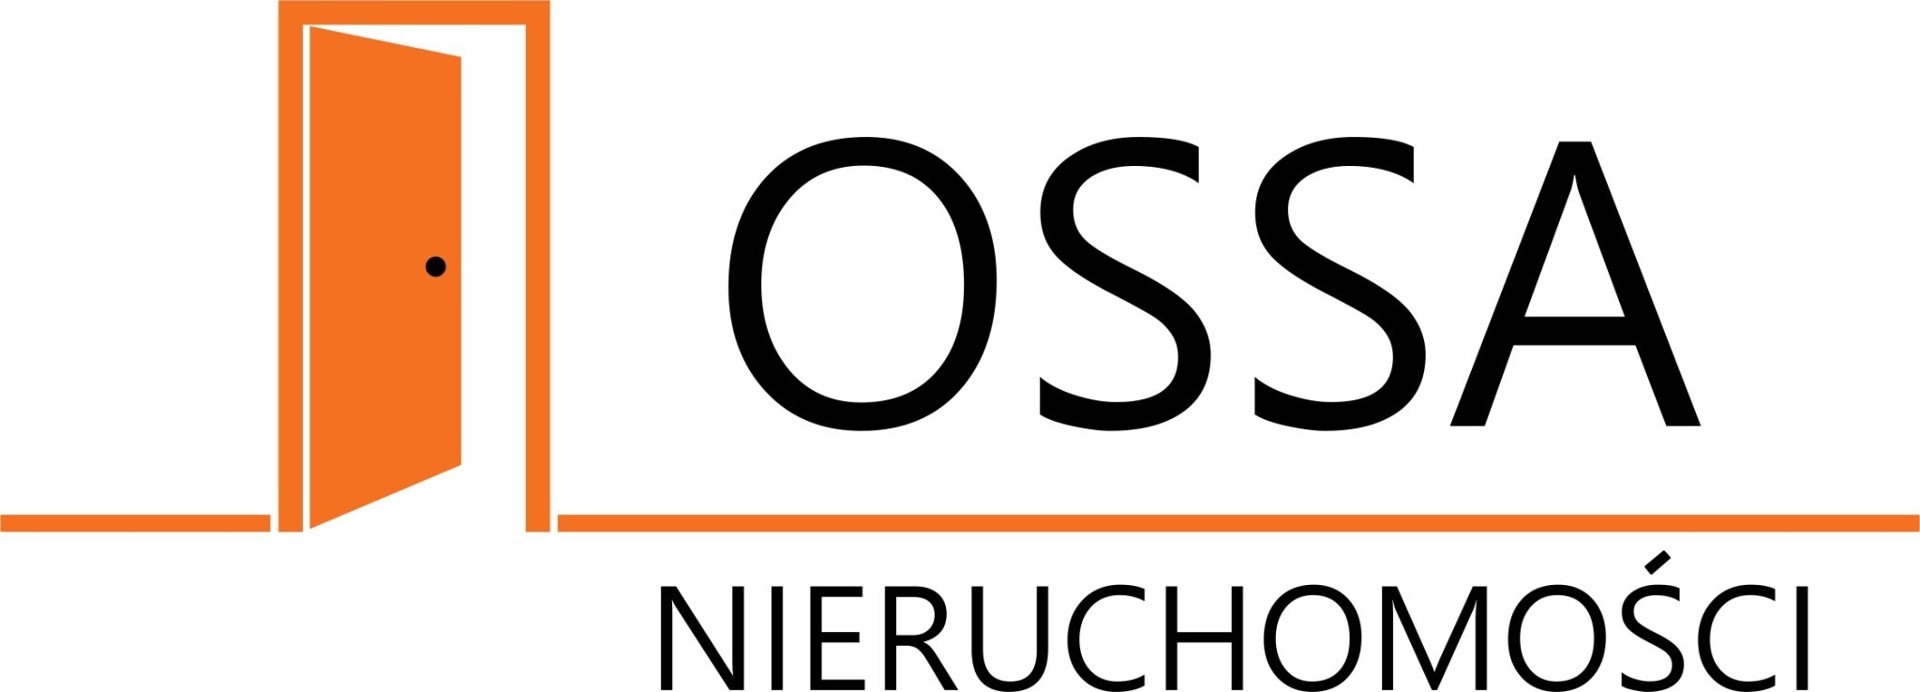 Logo NIERUCHOMOŚCI OSSA - ANDRZEJ OSOWSKI